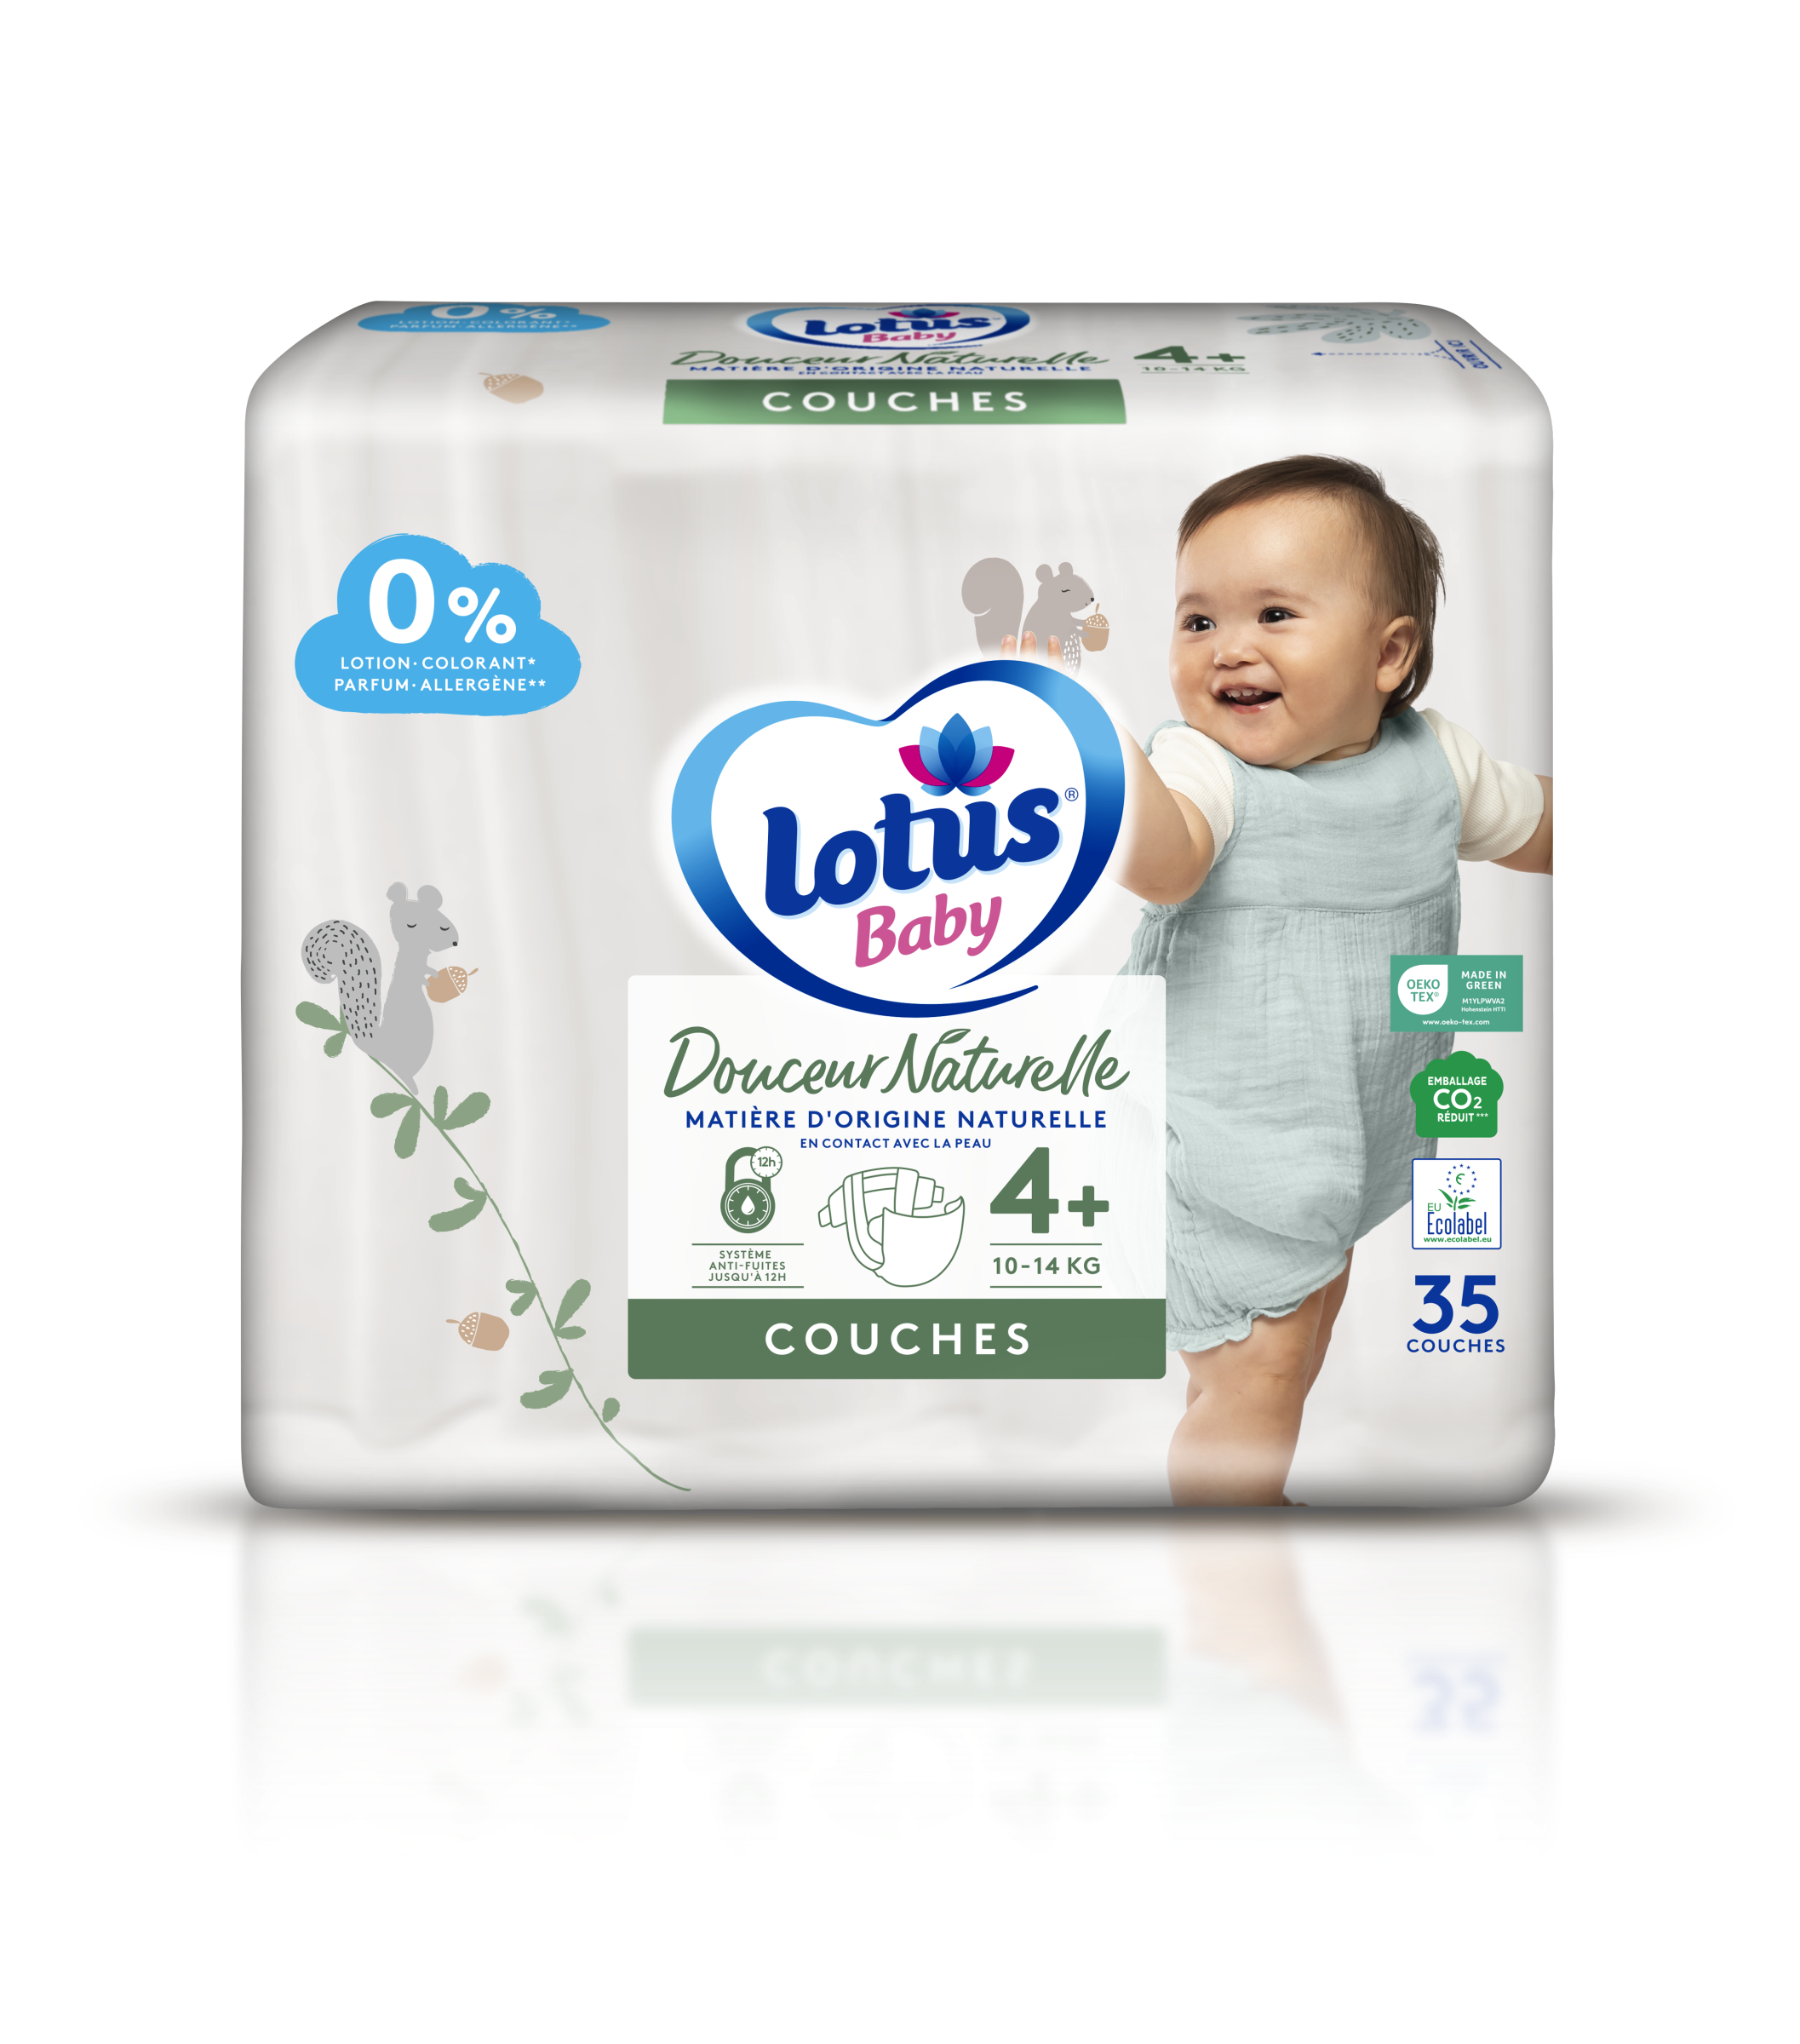 LOTUS Lingettes papier toilette humide fresh natural 42 lingettes pas cher  